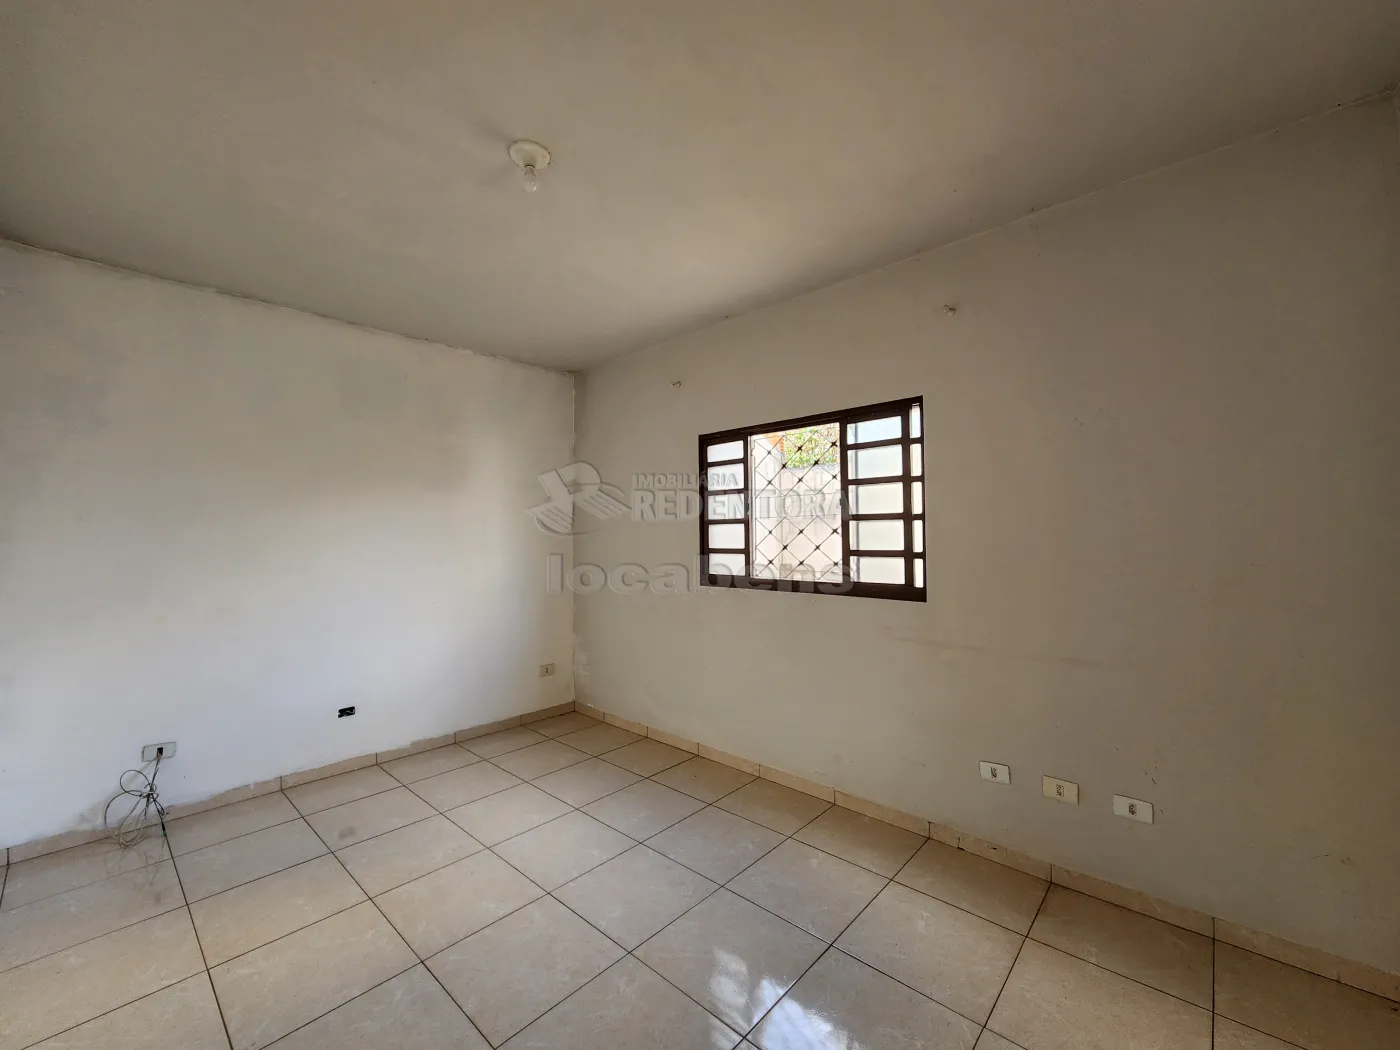 Alugar Casa / Padrão em Guapiaçu apenas R$ 1.150,00 - Foto 2